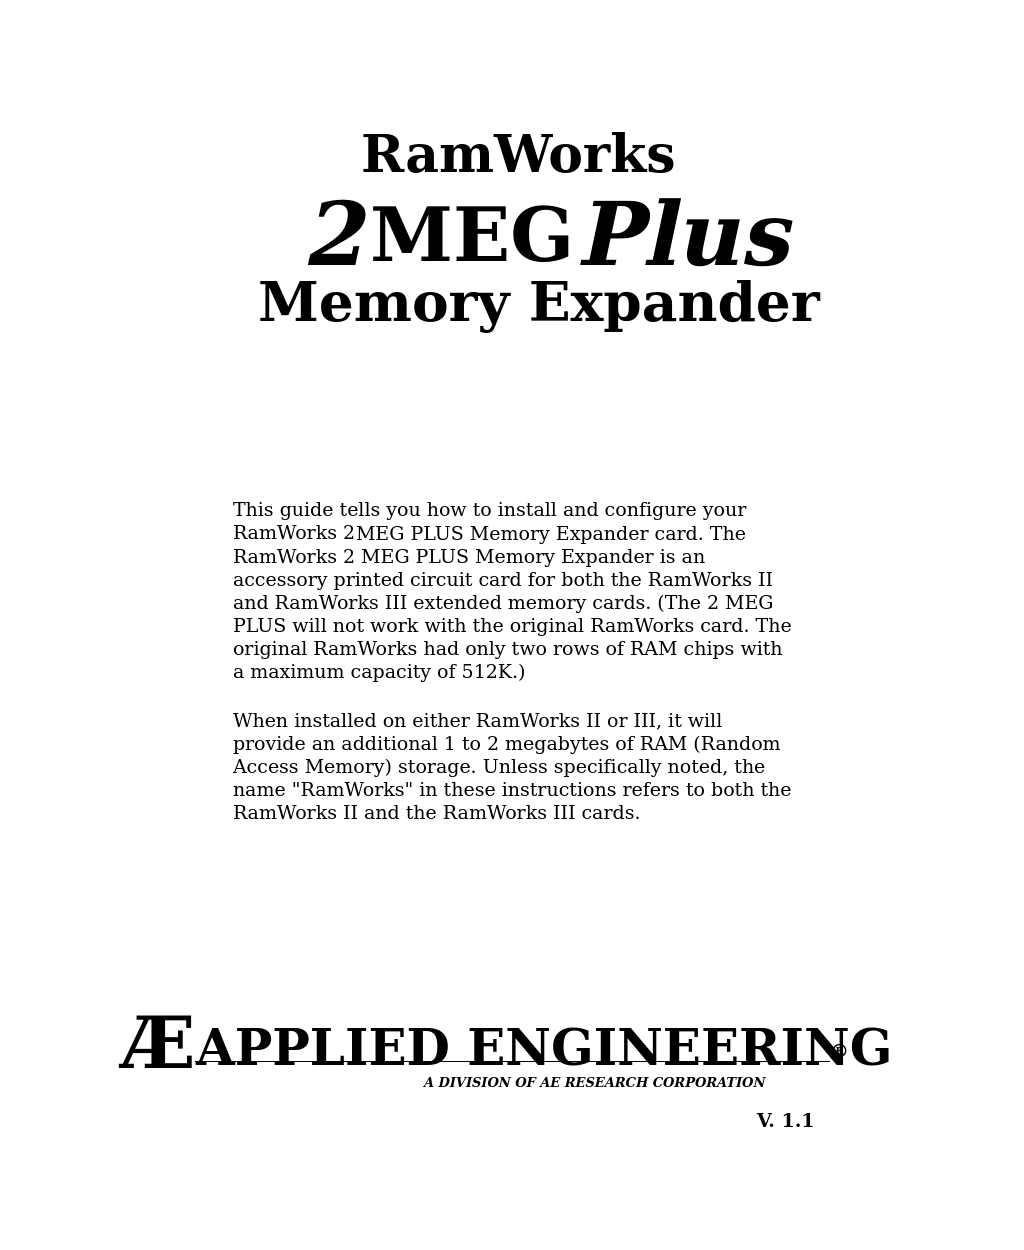 RamWorks 2 MEG Plus Memory Expander